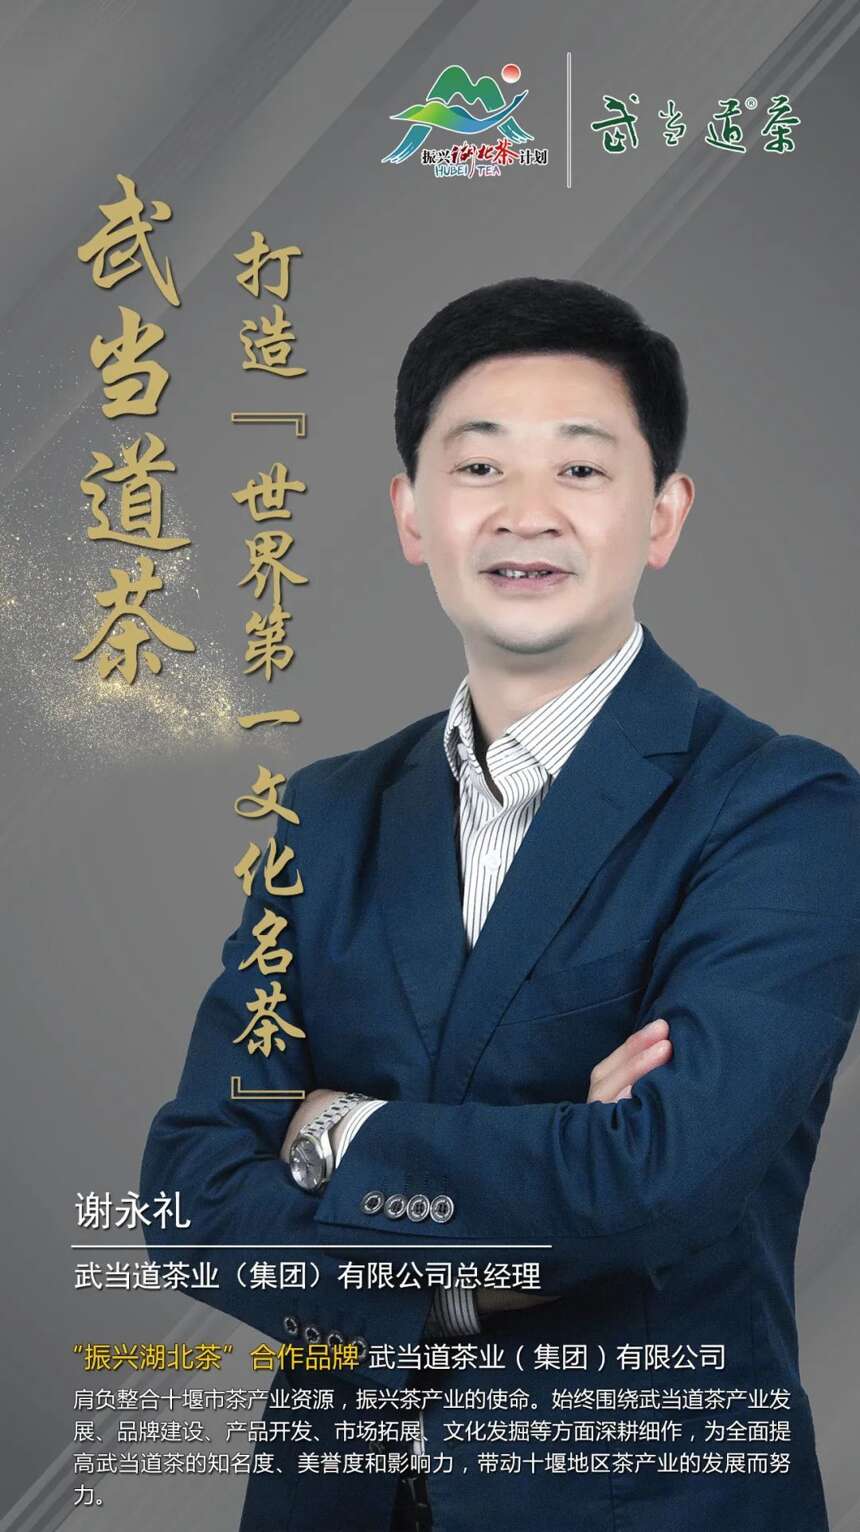 “振兴湖北茶”合作品牌巡礼 |武当道茶业（集团）有限公司